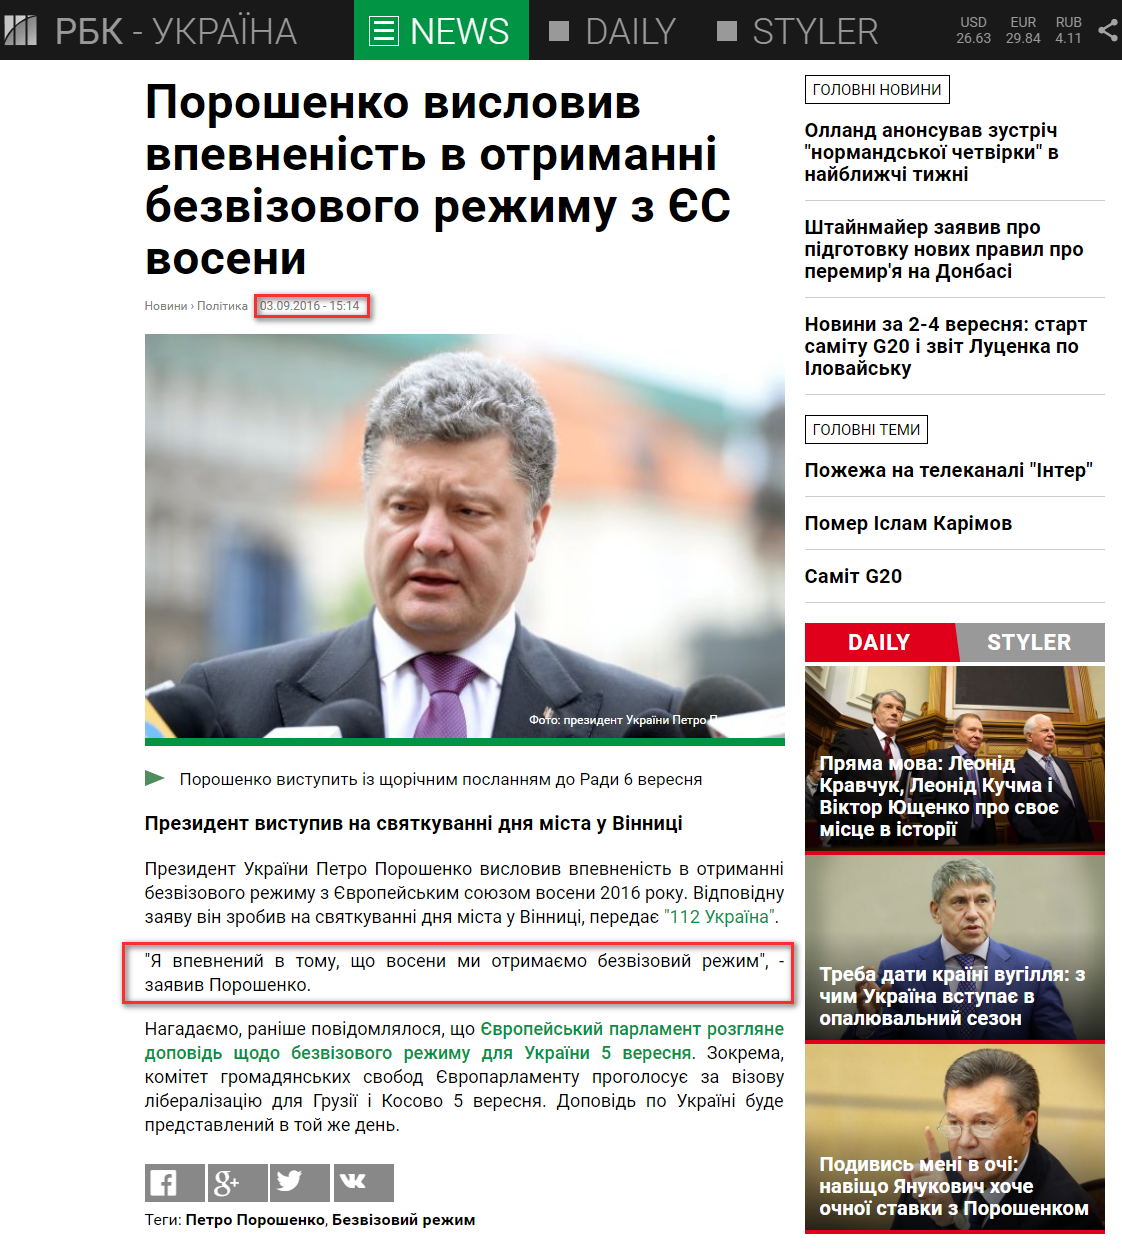 https://www.rbc.ua/ukr/news/poroshenko-vyrazil-uverennost-poluchenii-1472904424.html